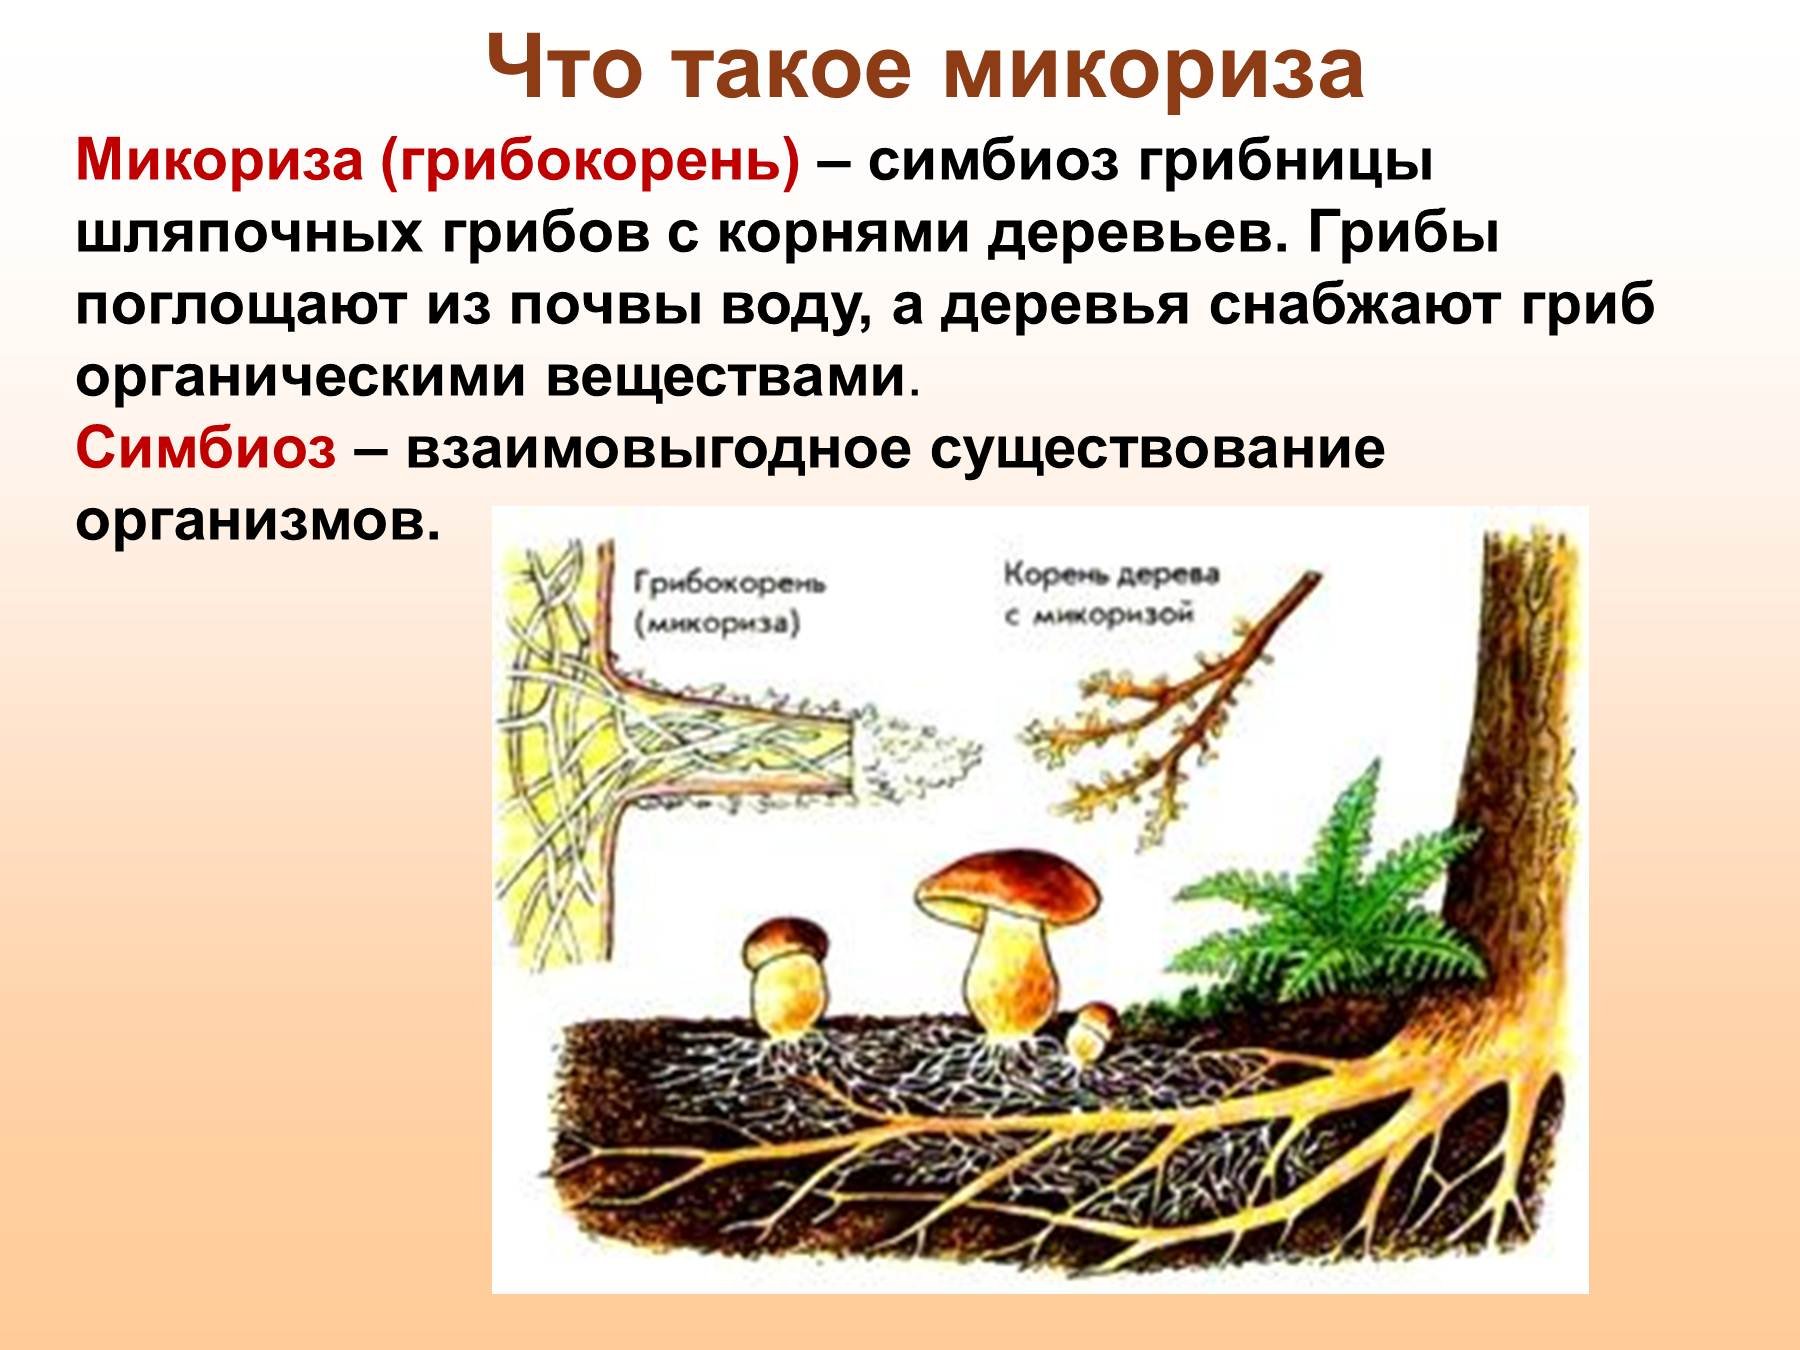 Корни грибов как называется. Шляпочные грибы микориза. Микориза у шляпочных грибов. Трутовик микориза. Что такое микориза у грибов.